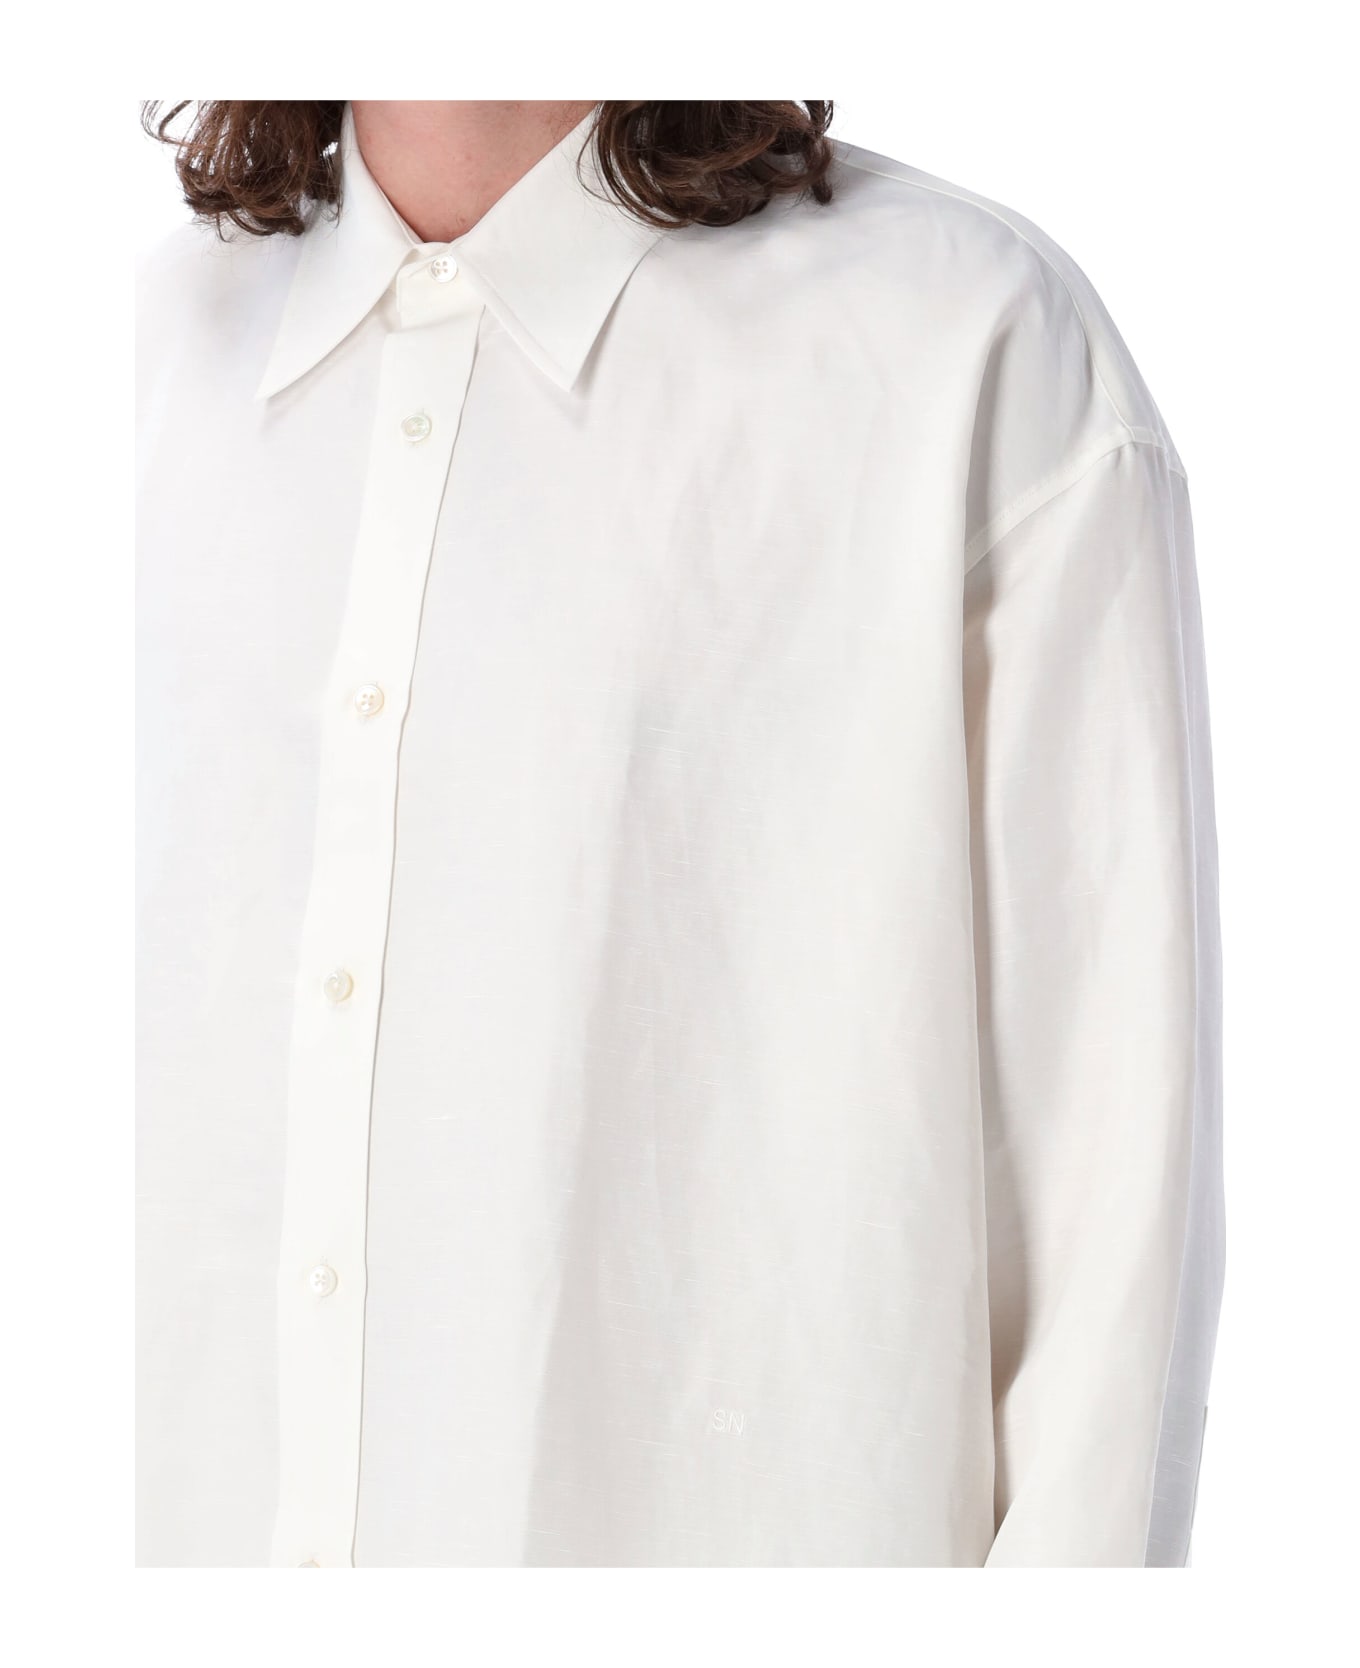 Studio Nicholson Loche Shirt - OPTIC WHITE シャツ